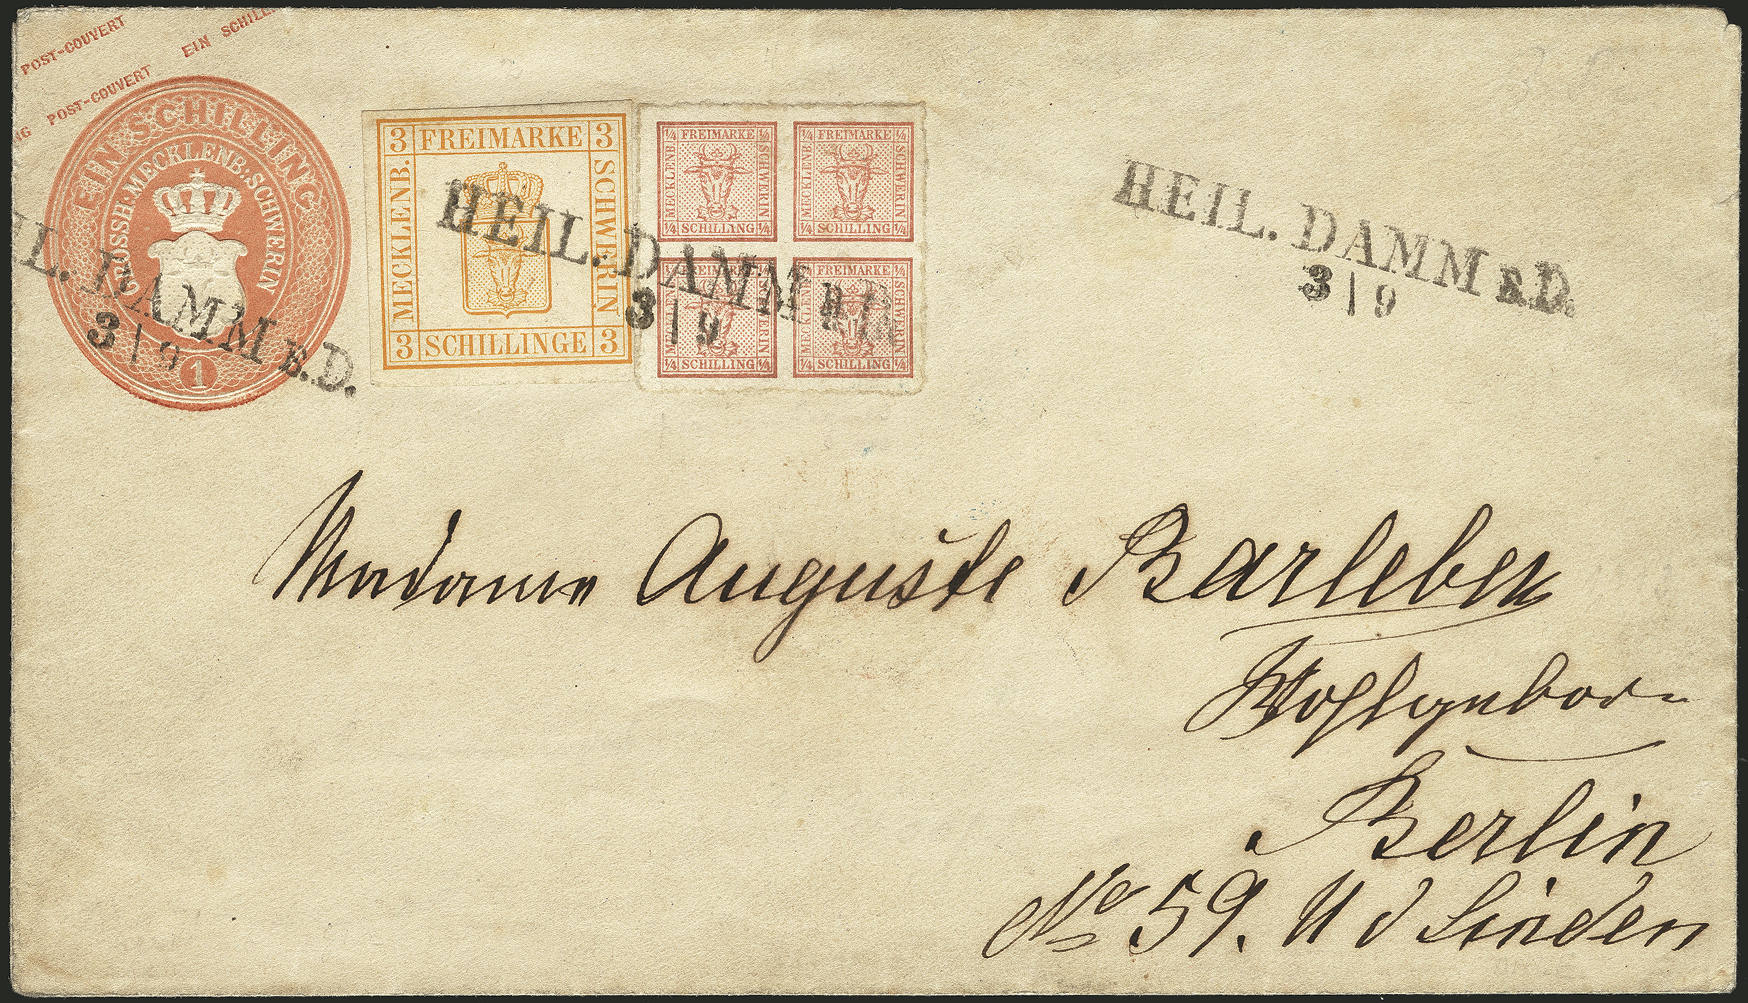 Ein Briefumschlag aus dem Ostseebad Heiligendamm, adressiert an Madame Auguste Barleben in Berlin, gehört zur Briefmarkensammlung des ehemaligen Tengelmann-Chefs Haub, die am 25.09.2021 in Wiesbaden unter den Hammer kommt.